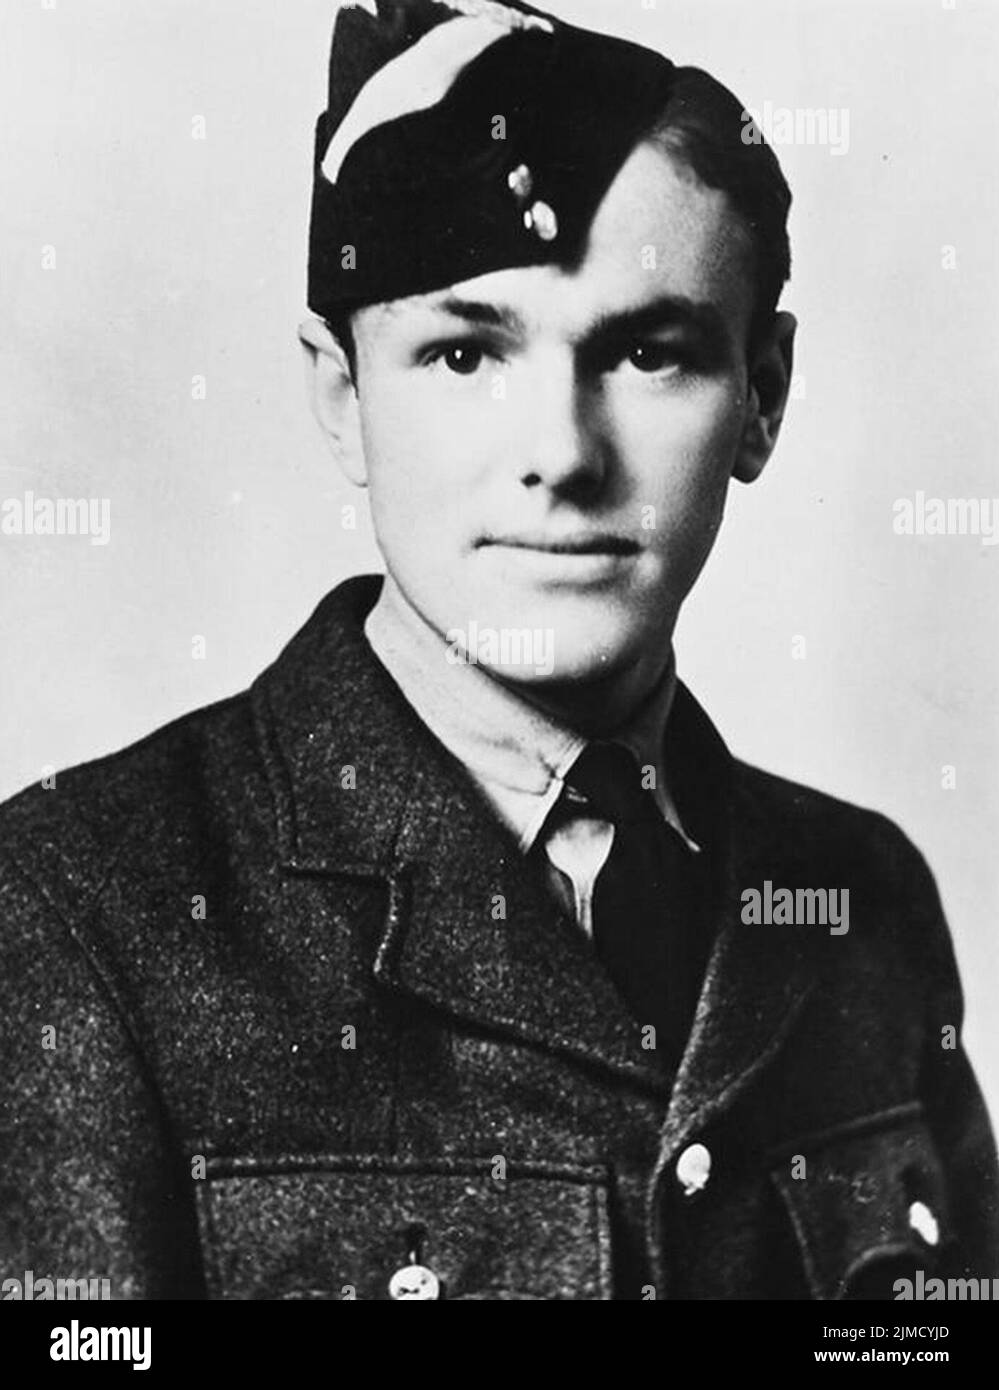 Arthur Lewis Aaron RAF, der am 13. August 1943 in Italien mit dem Victoria Cross ausgezeichnet wurde. Stockfoto